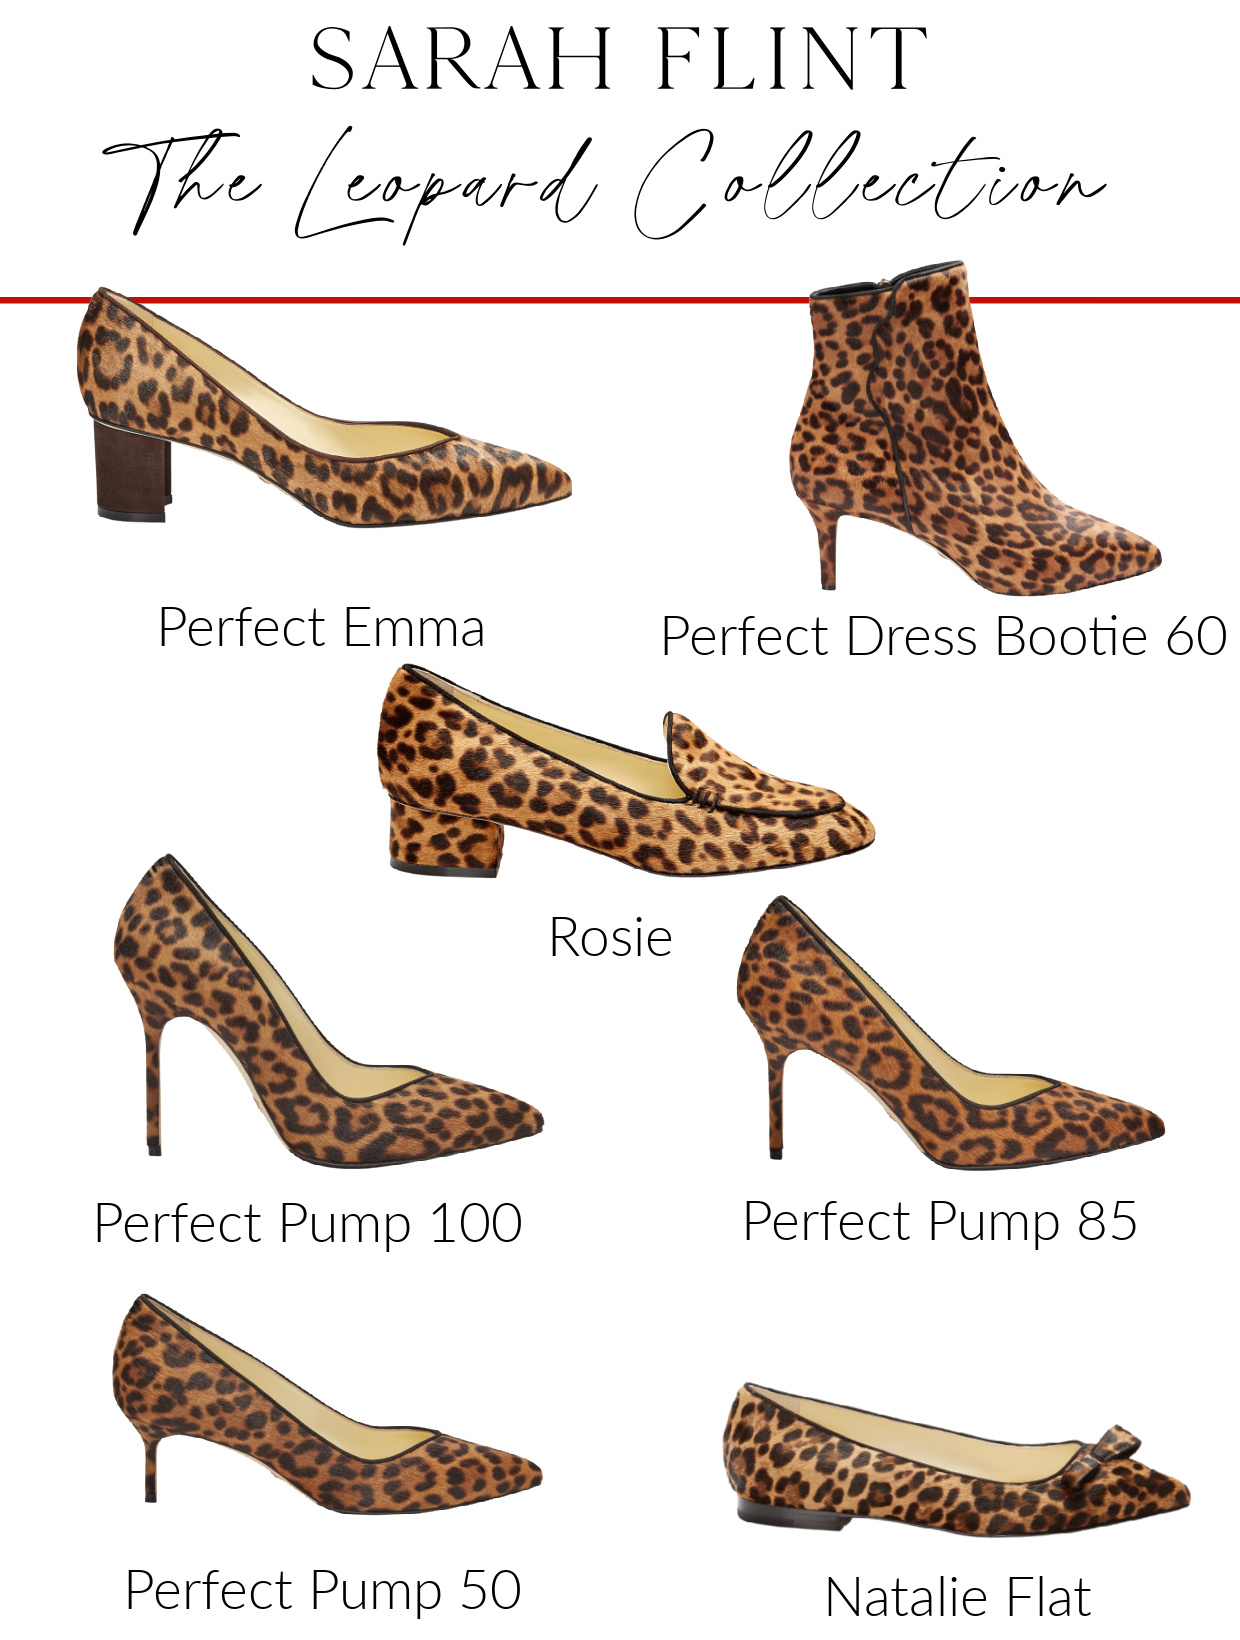 Sarah Flint leopard shoe collection